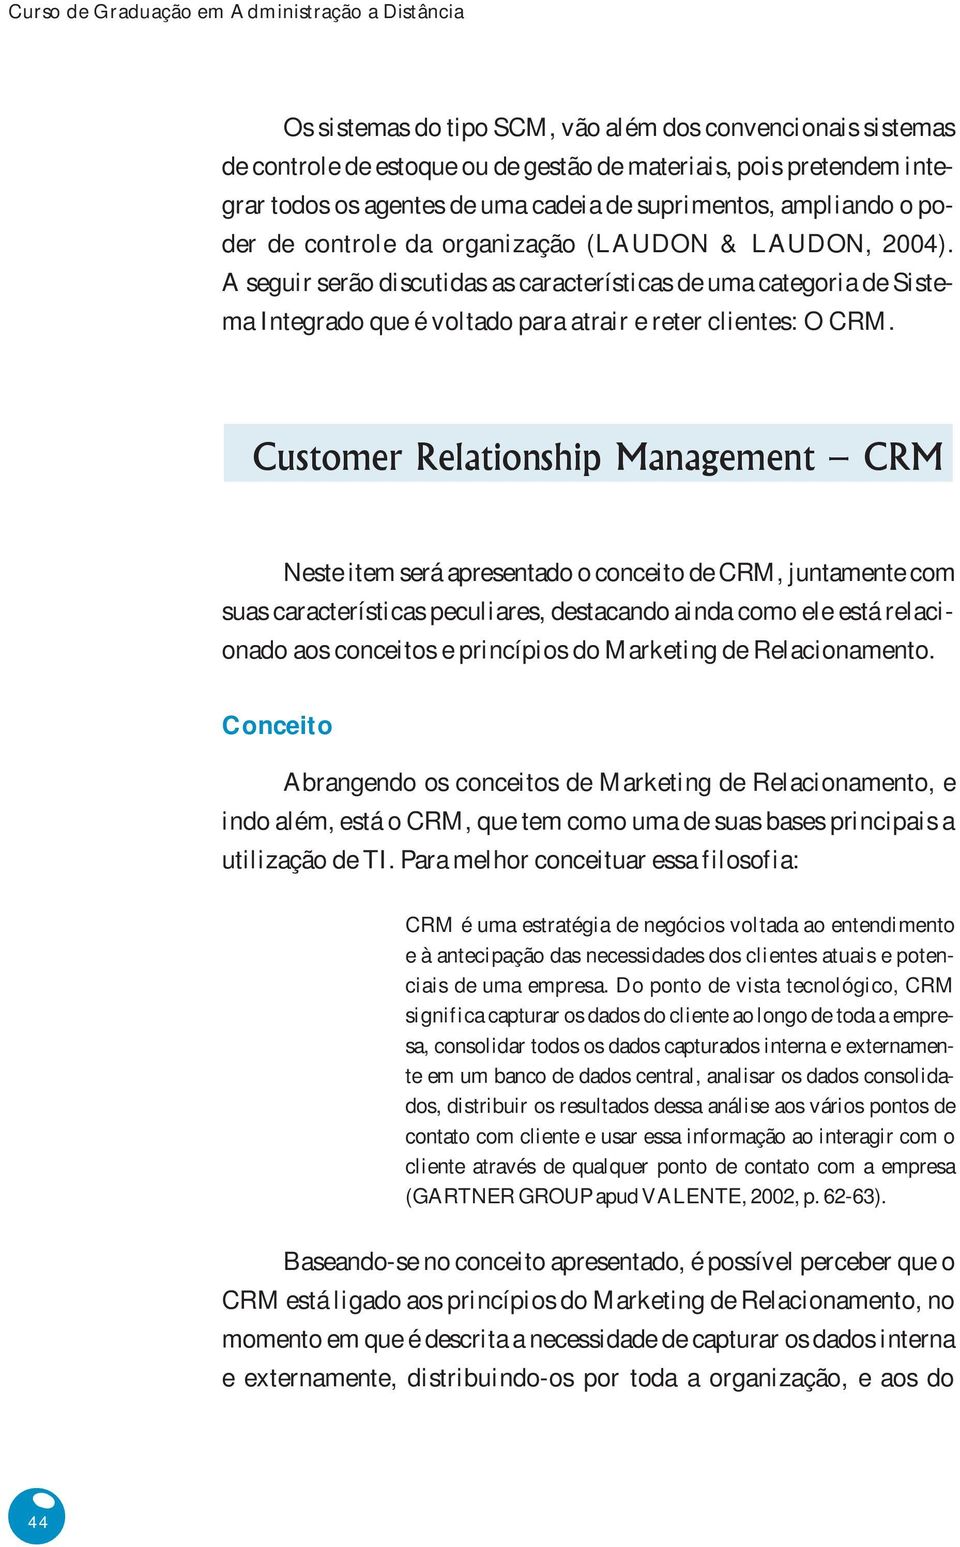 A seguir serão discutidas as características de uma categoria de Sistema Integrado que é voltado para atrair e reter clientes: O CRM.